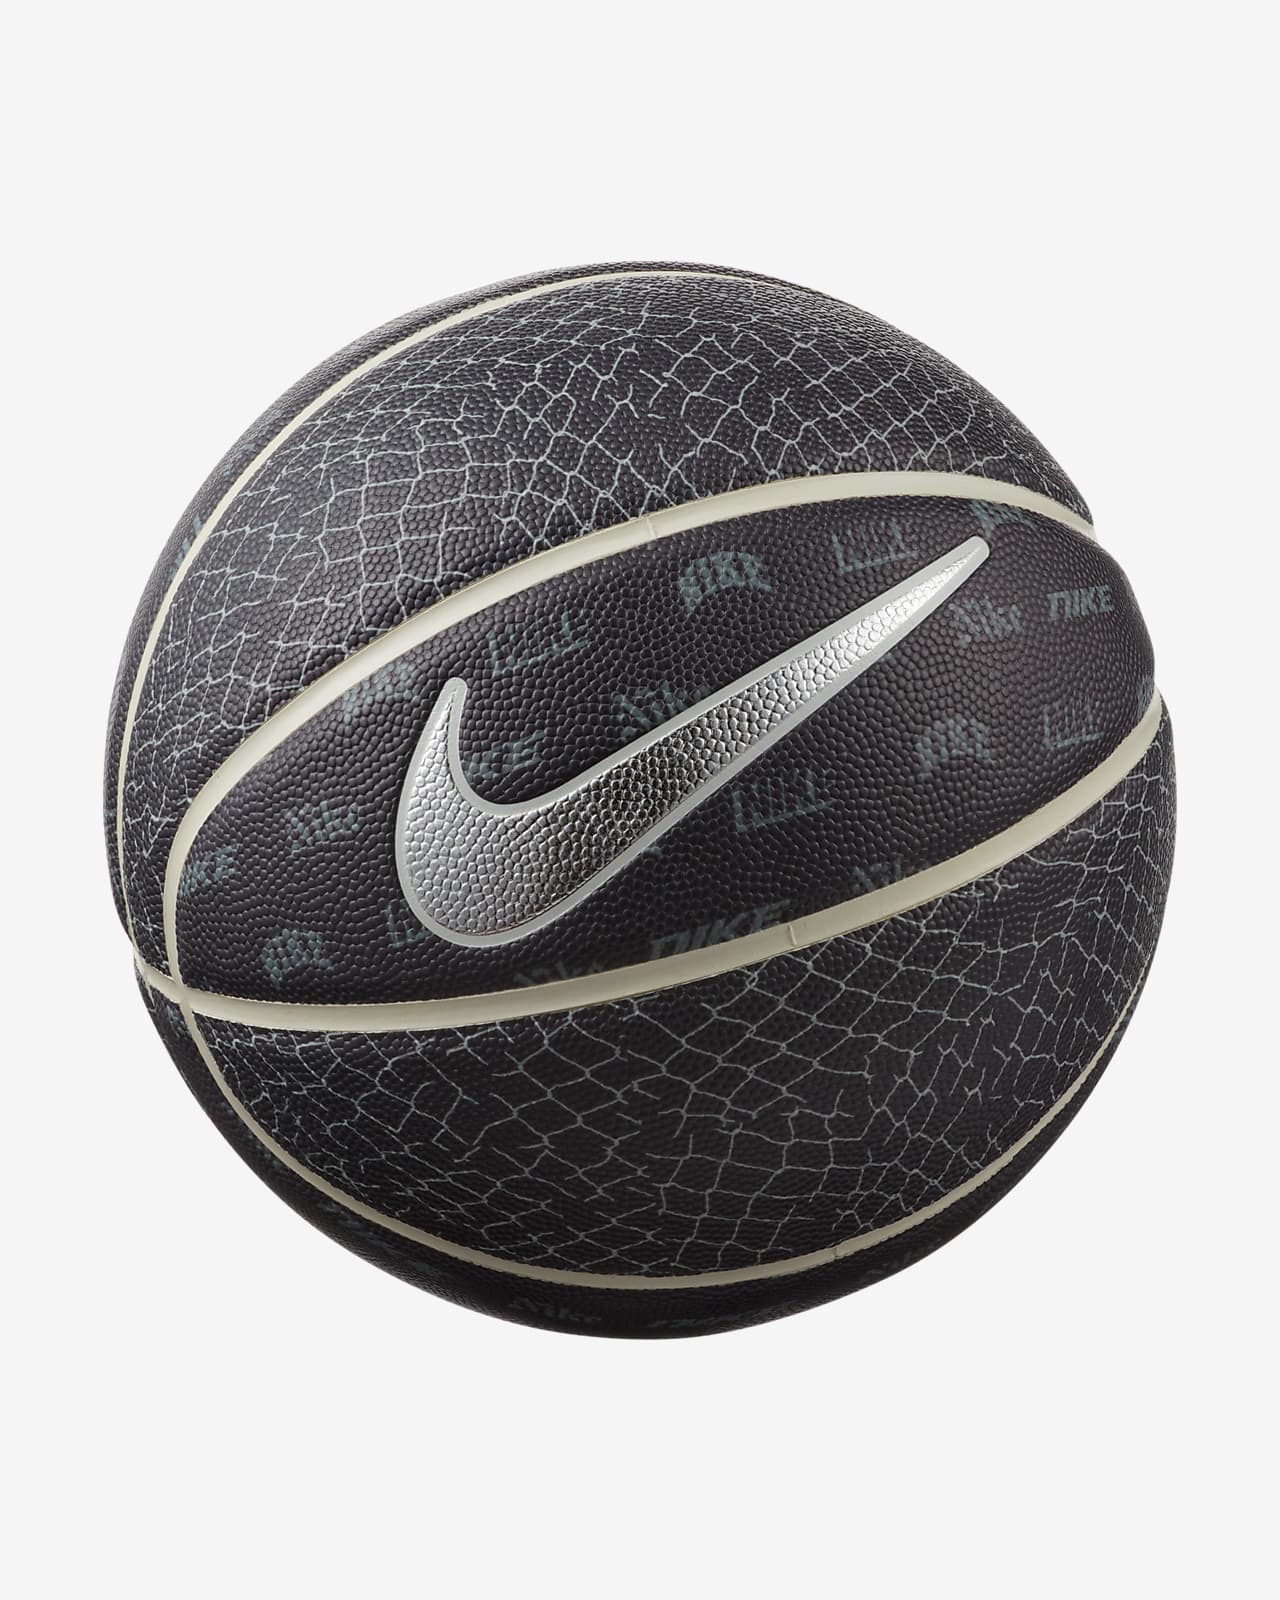 Ballon de basketball Nike « NY vs. NY » 8P